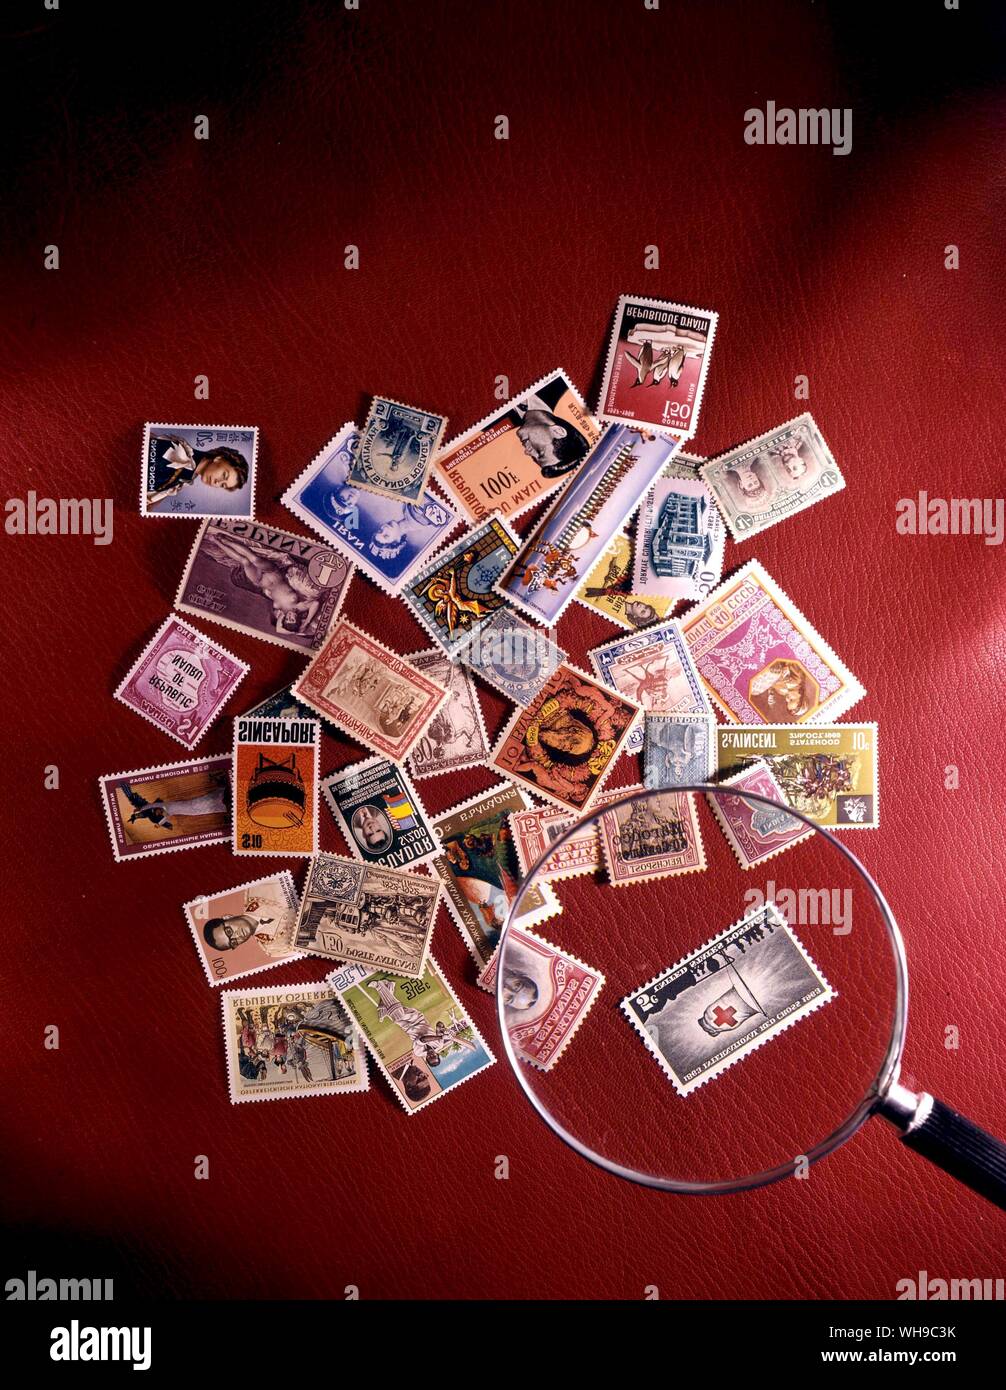 Eine Reihe von Briefmarken aus der ganzen Welt zufällig in einem Haufen mit einer Lupe auf einem roten Hintergrund gestapelt. Stockfoto